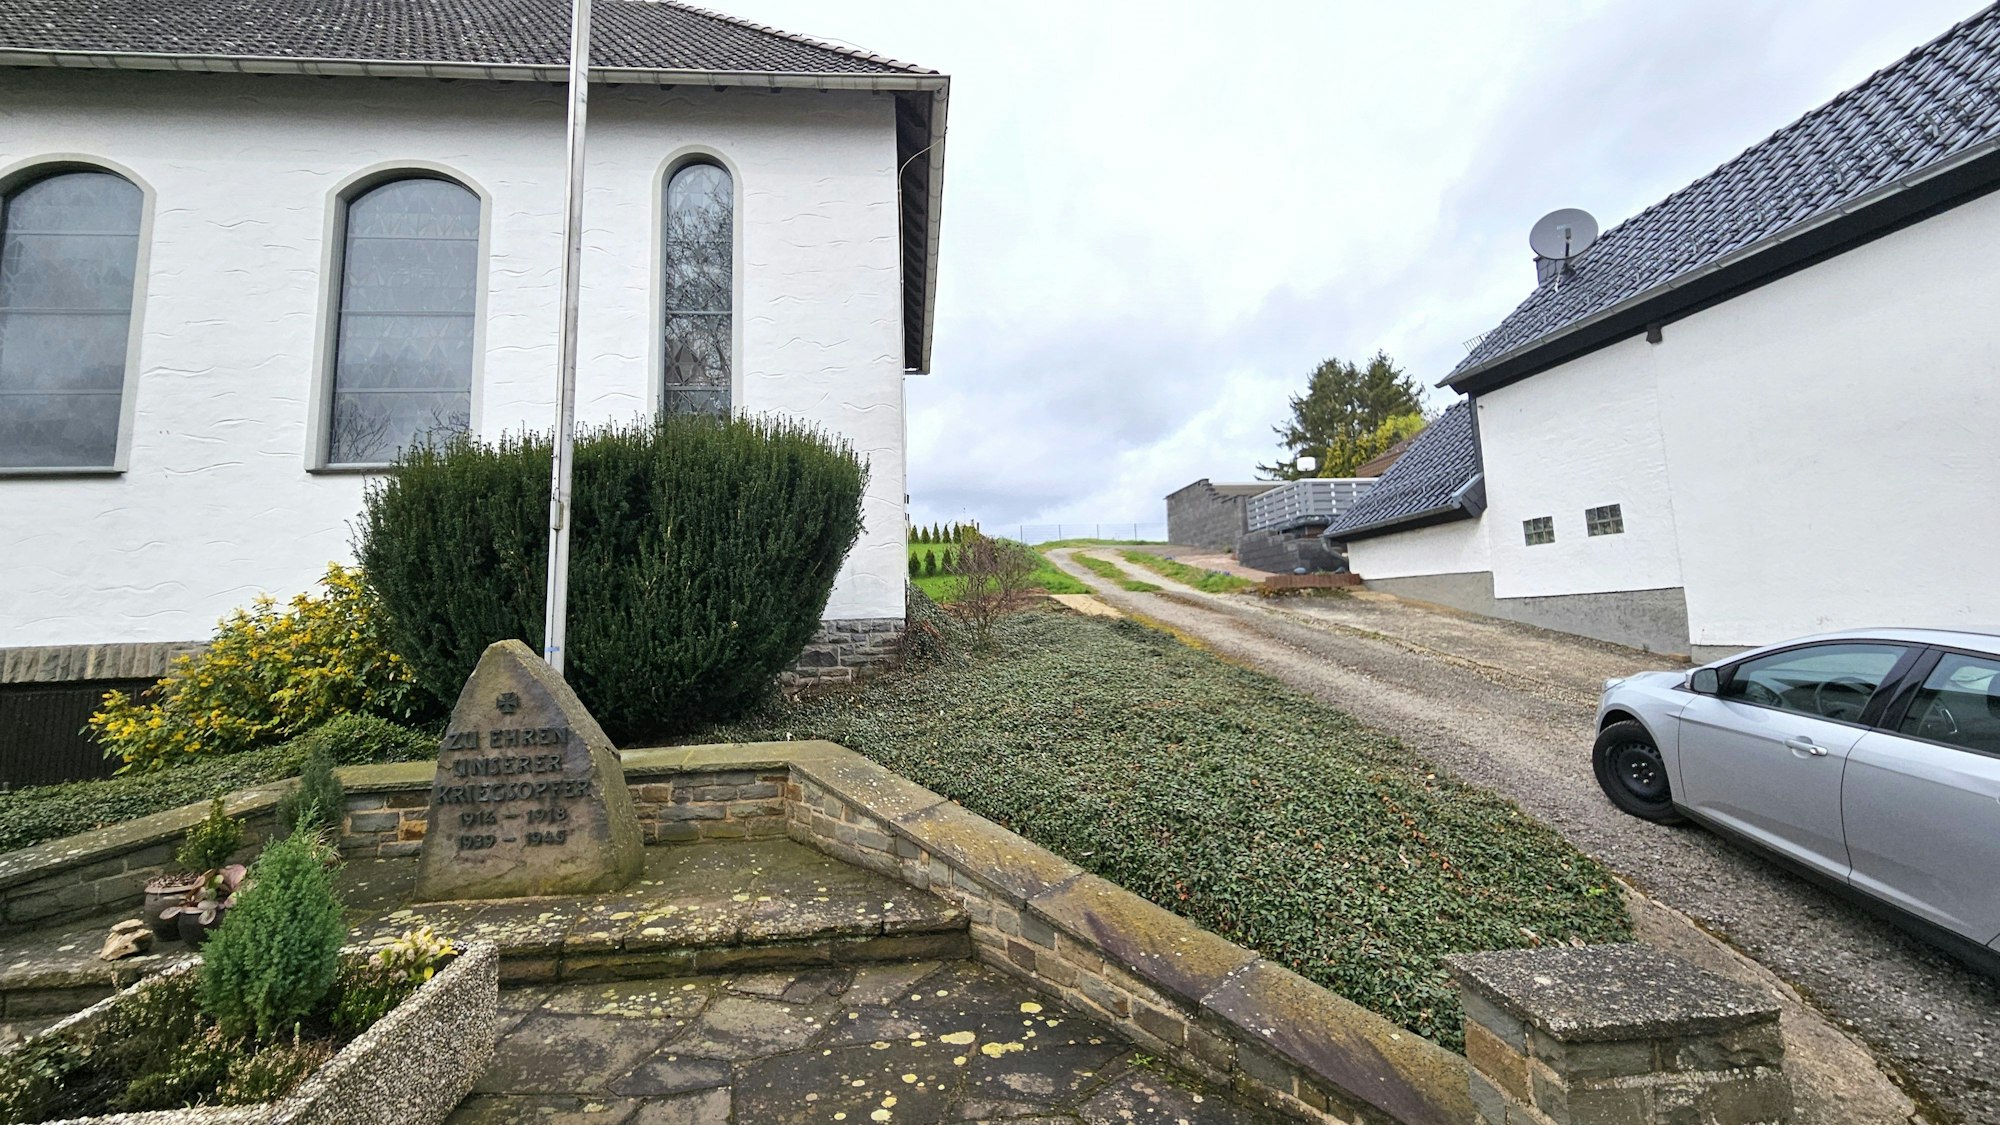 Blick auf die steile Zufahrt zu dem geplanten Gebiet neben der Kapelle.